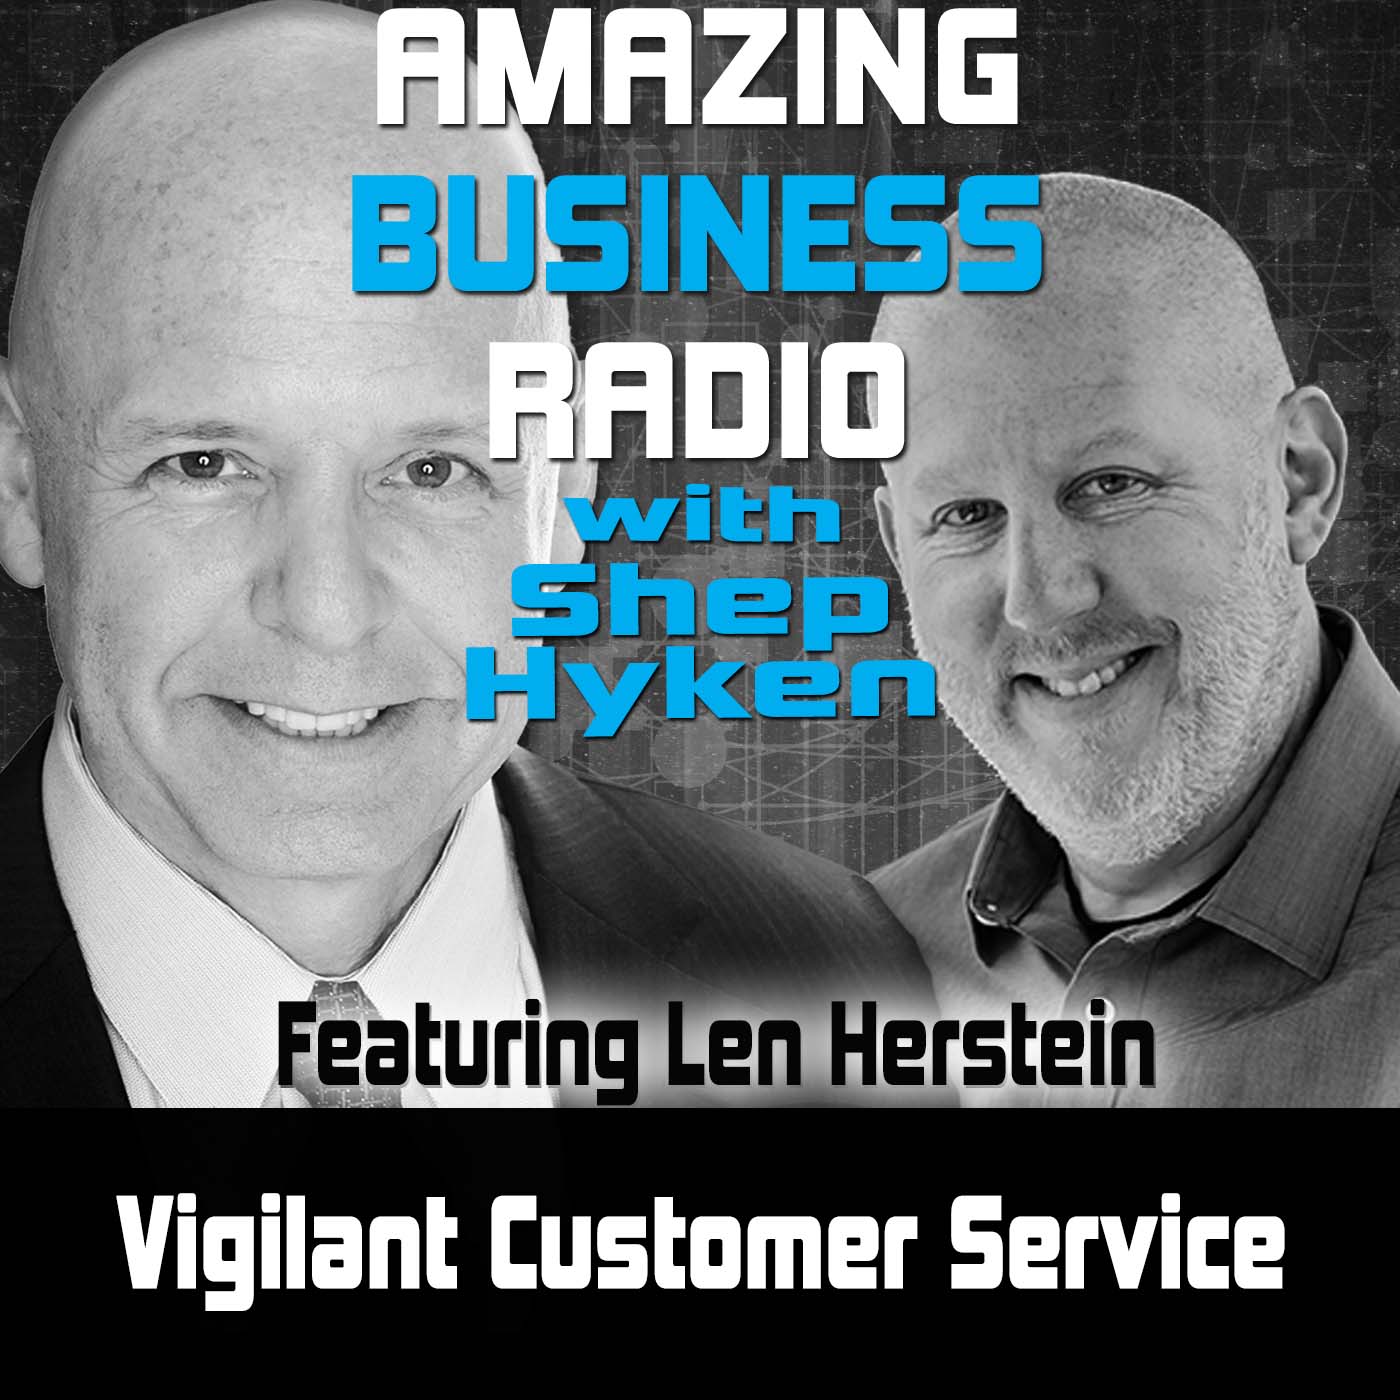 Amazing Business Radio: Len Herstein